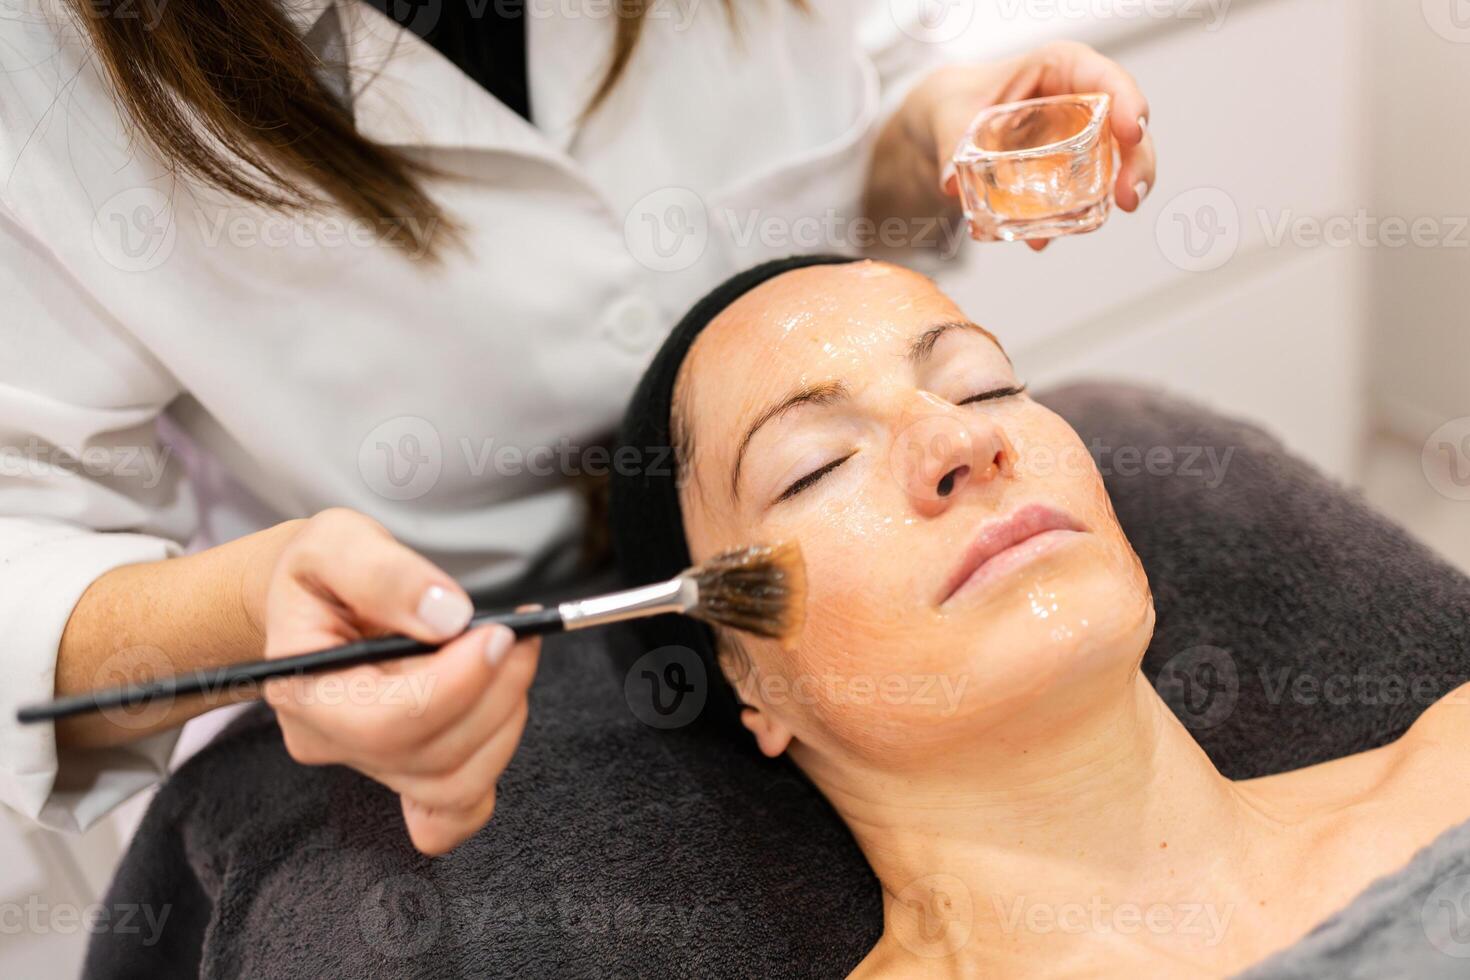 beskära kosmetolog applicering grädde på ansikte av klient foto